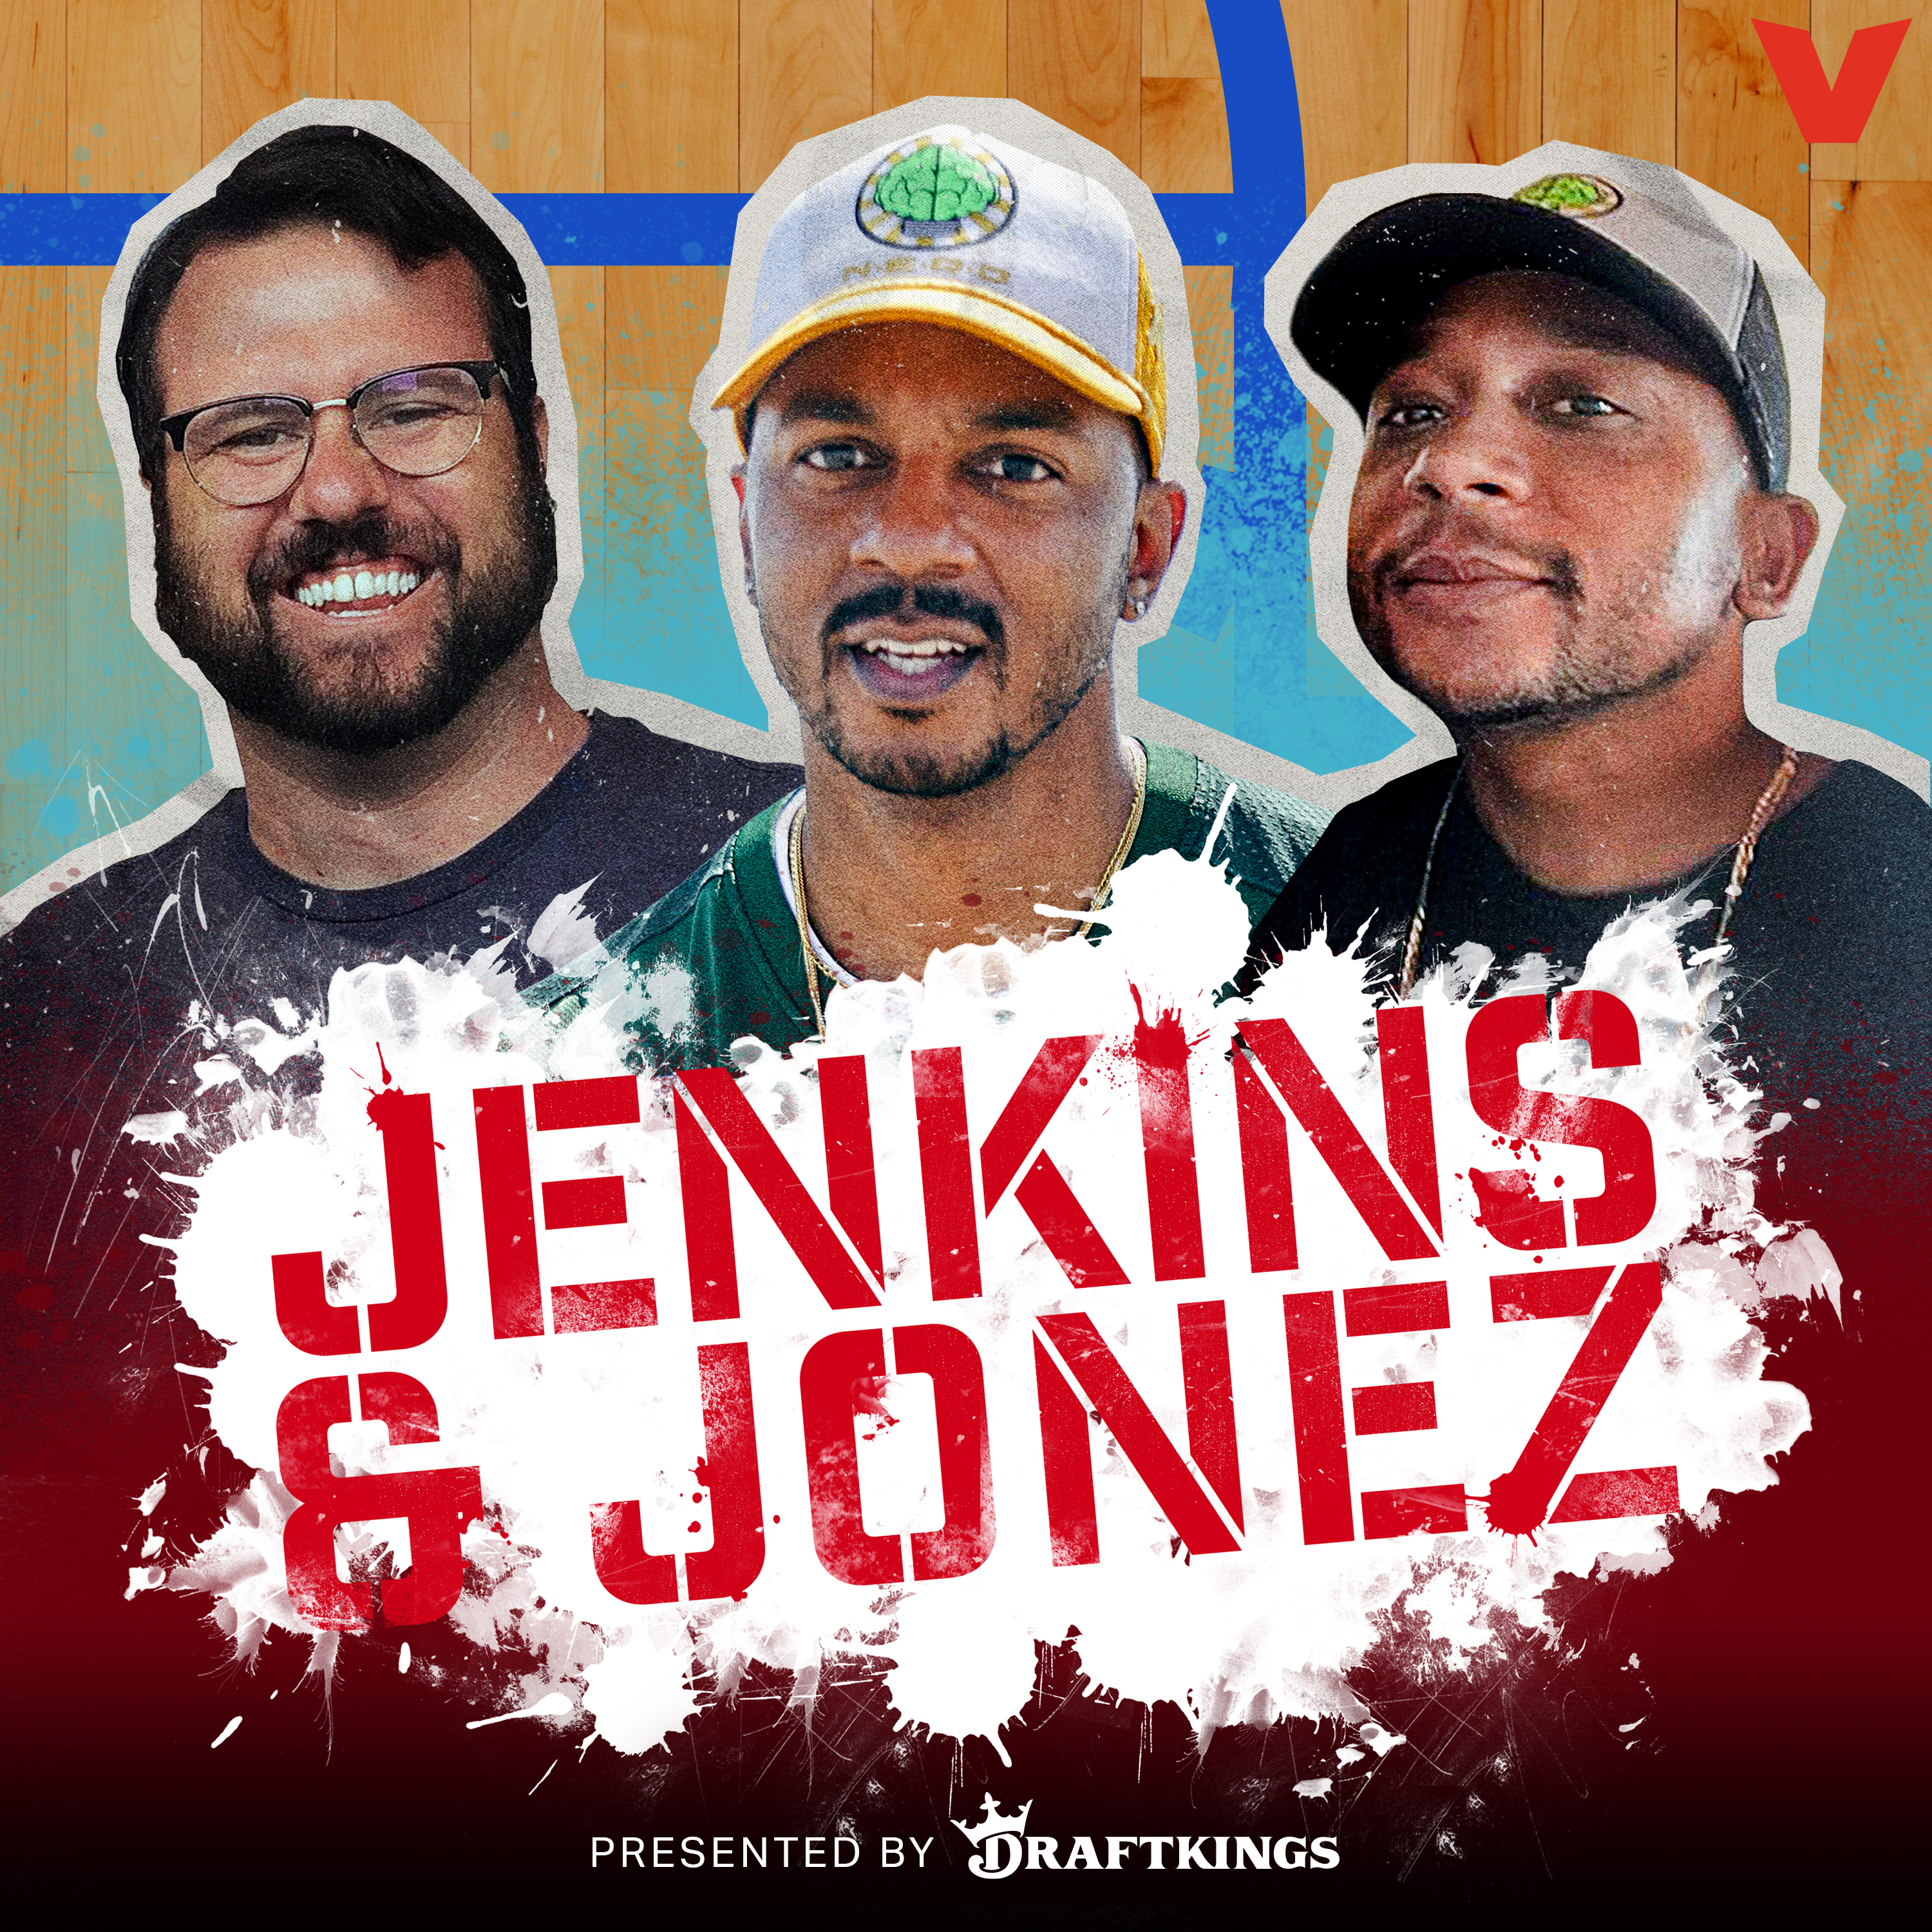 Jenkins and Jonez - The Kid Mero is back